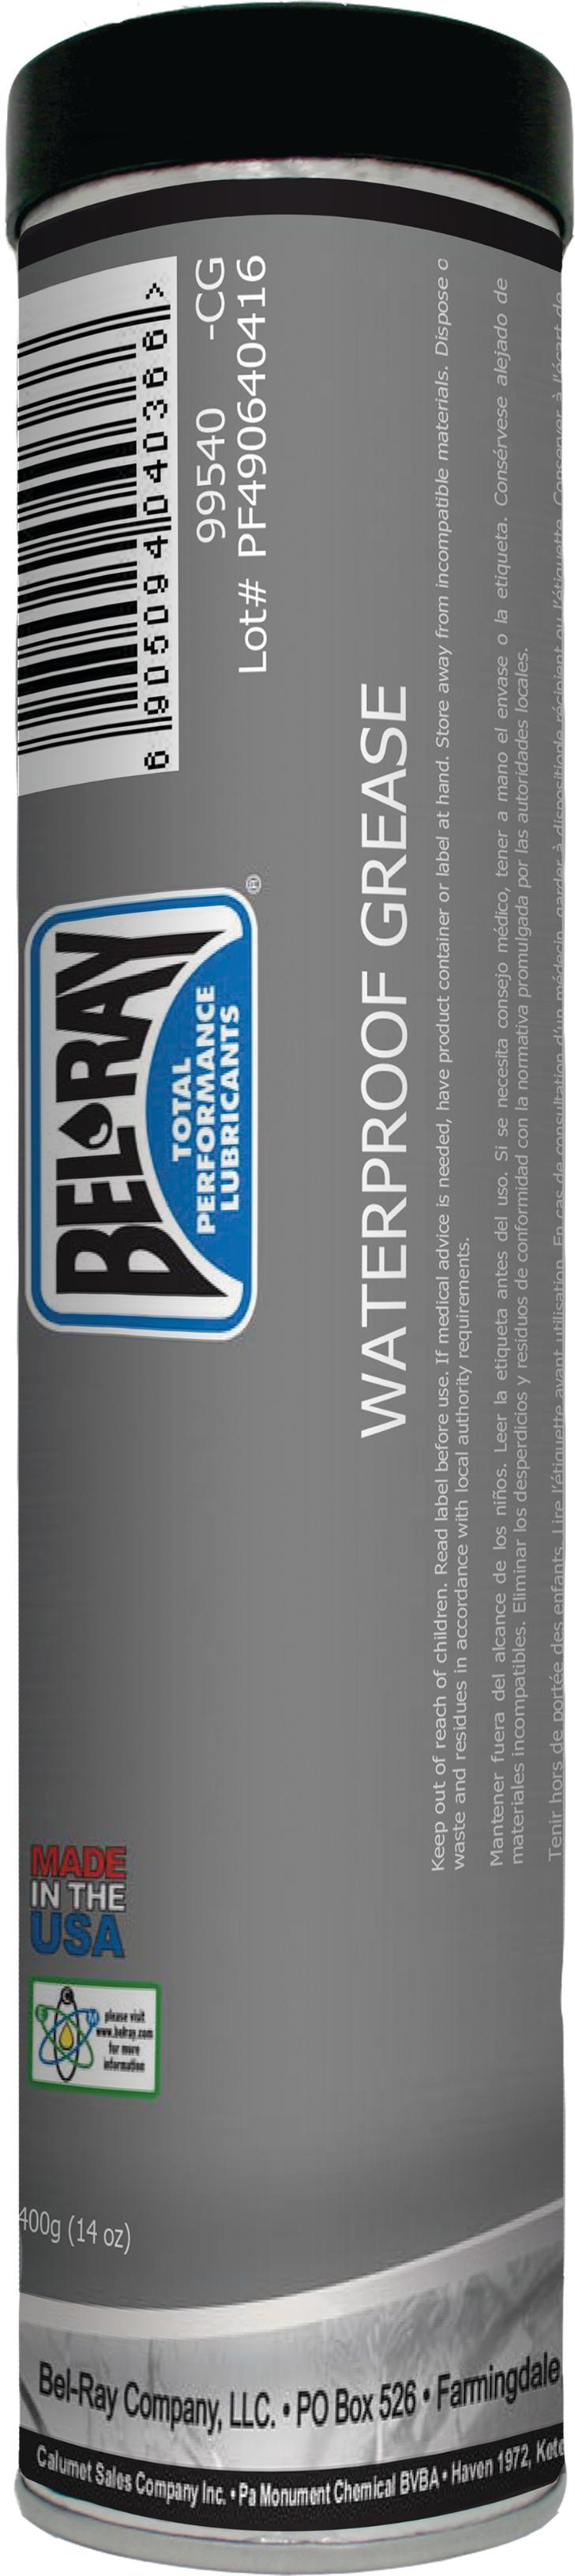 Bel-ray - Waterproof Grease 14oz Cartridge - 99540-CG